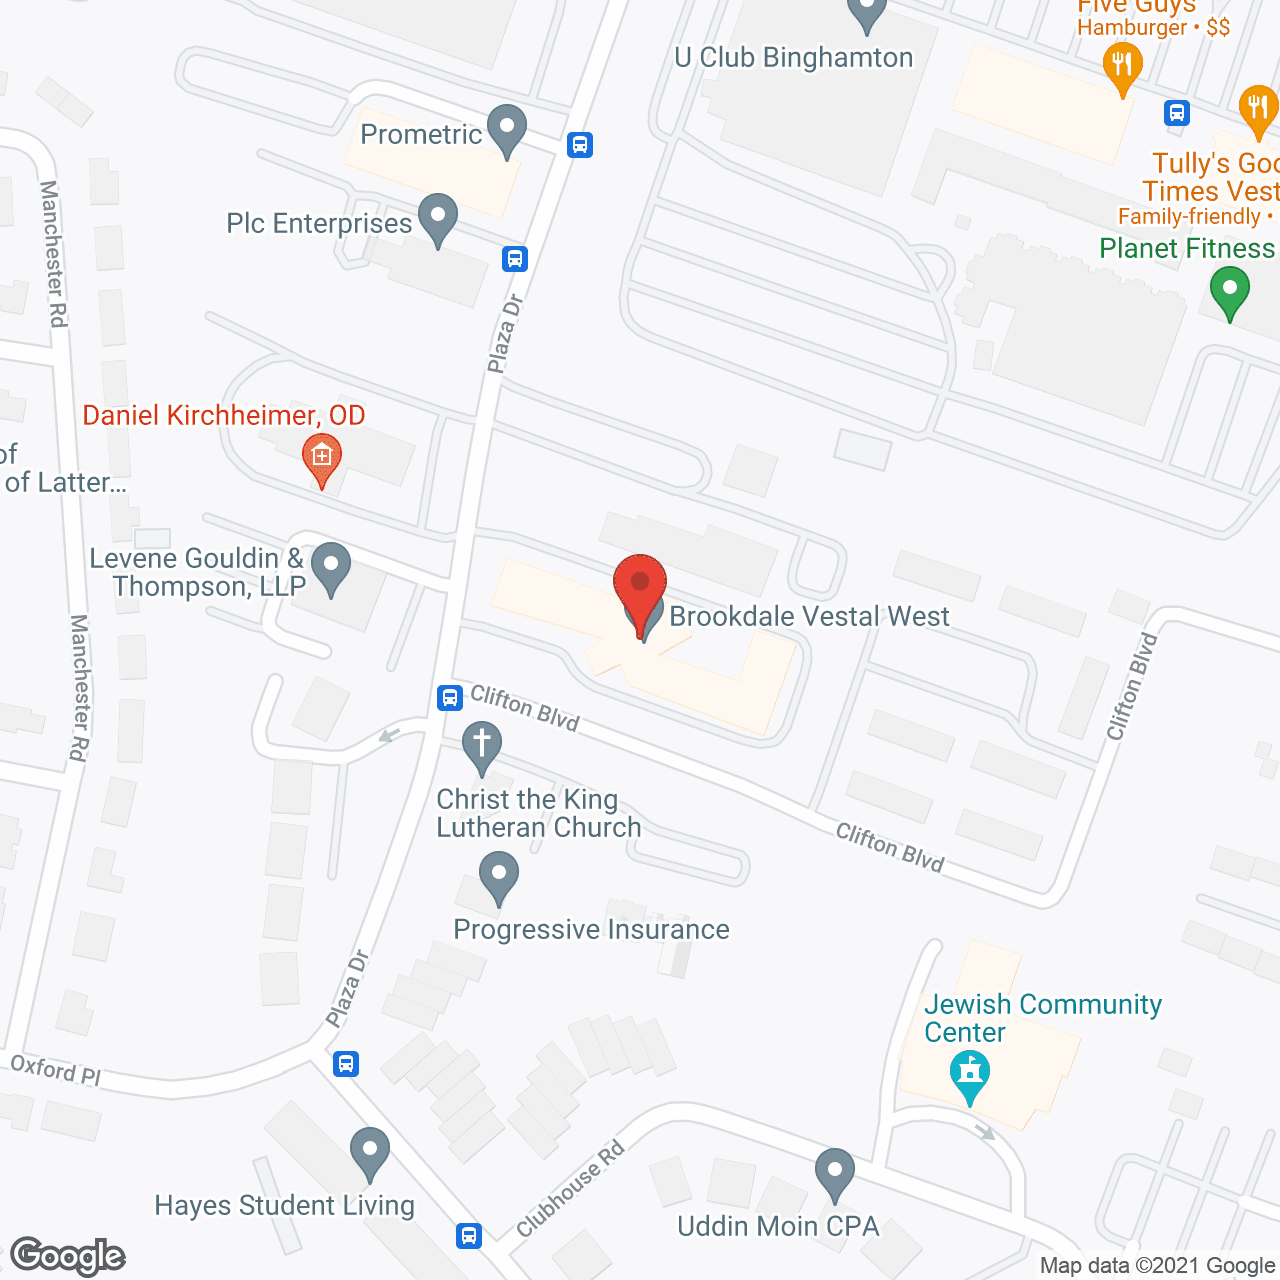 Brookdale Vestal West in google map